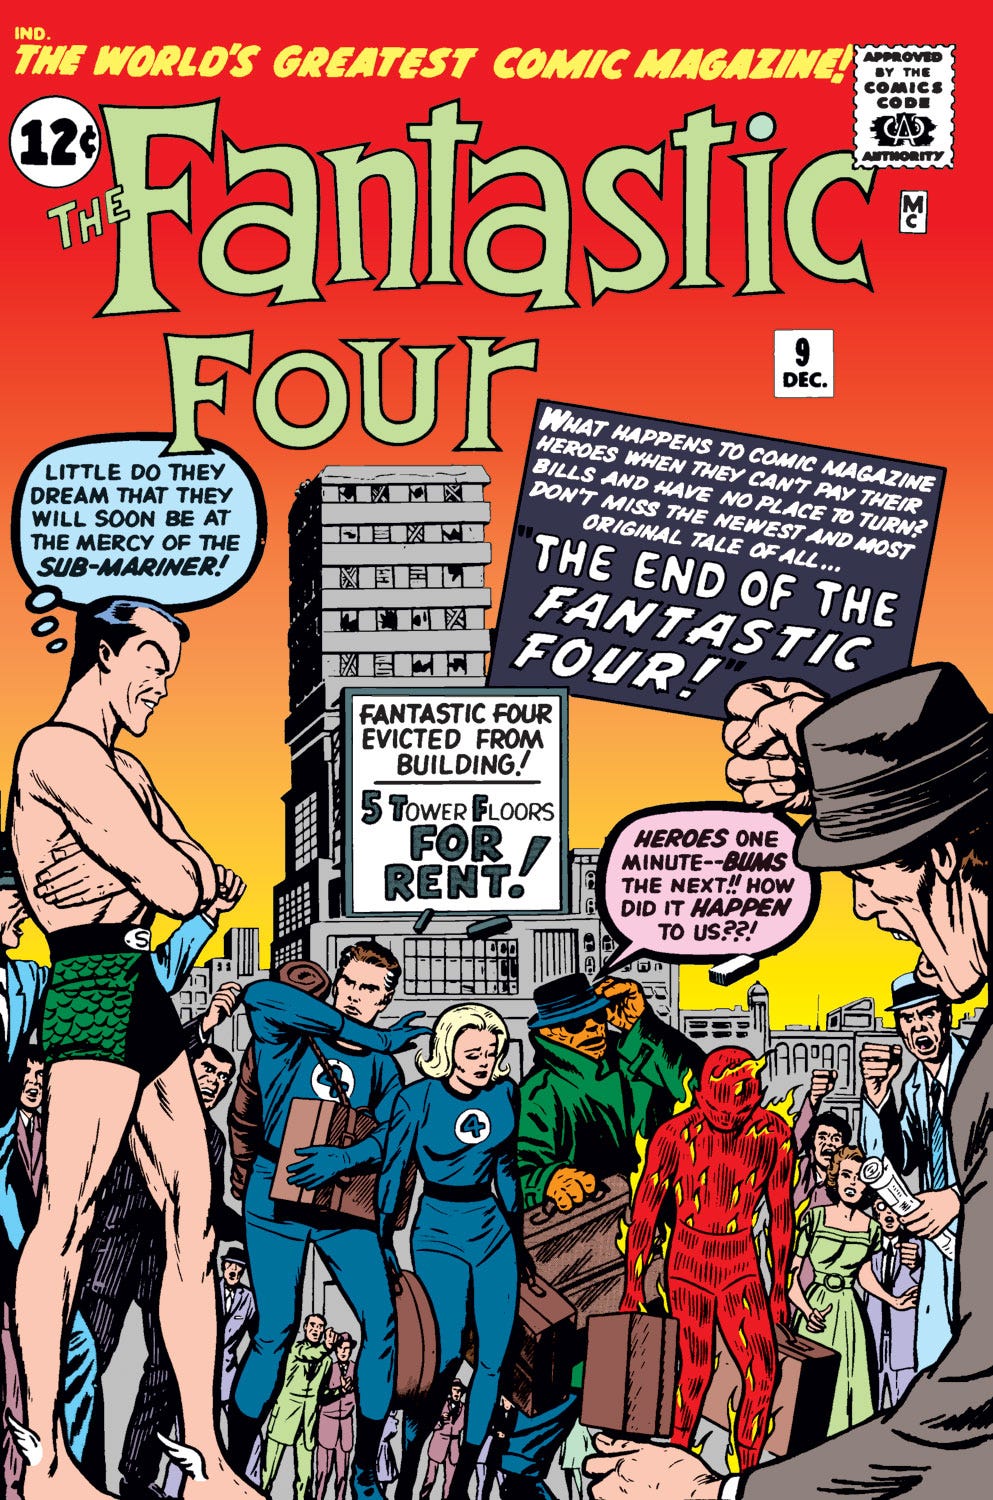 Episode 32: Fantastic Four, The Movie! (Fantastic Four #9 , Part 2) -- Dec 1962